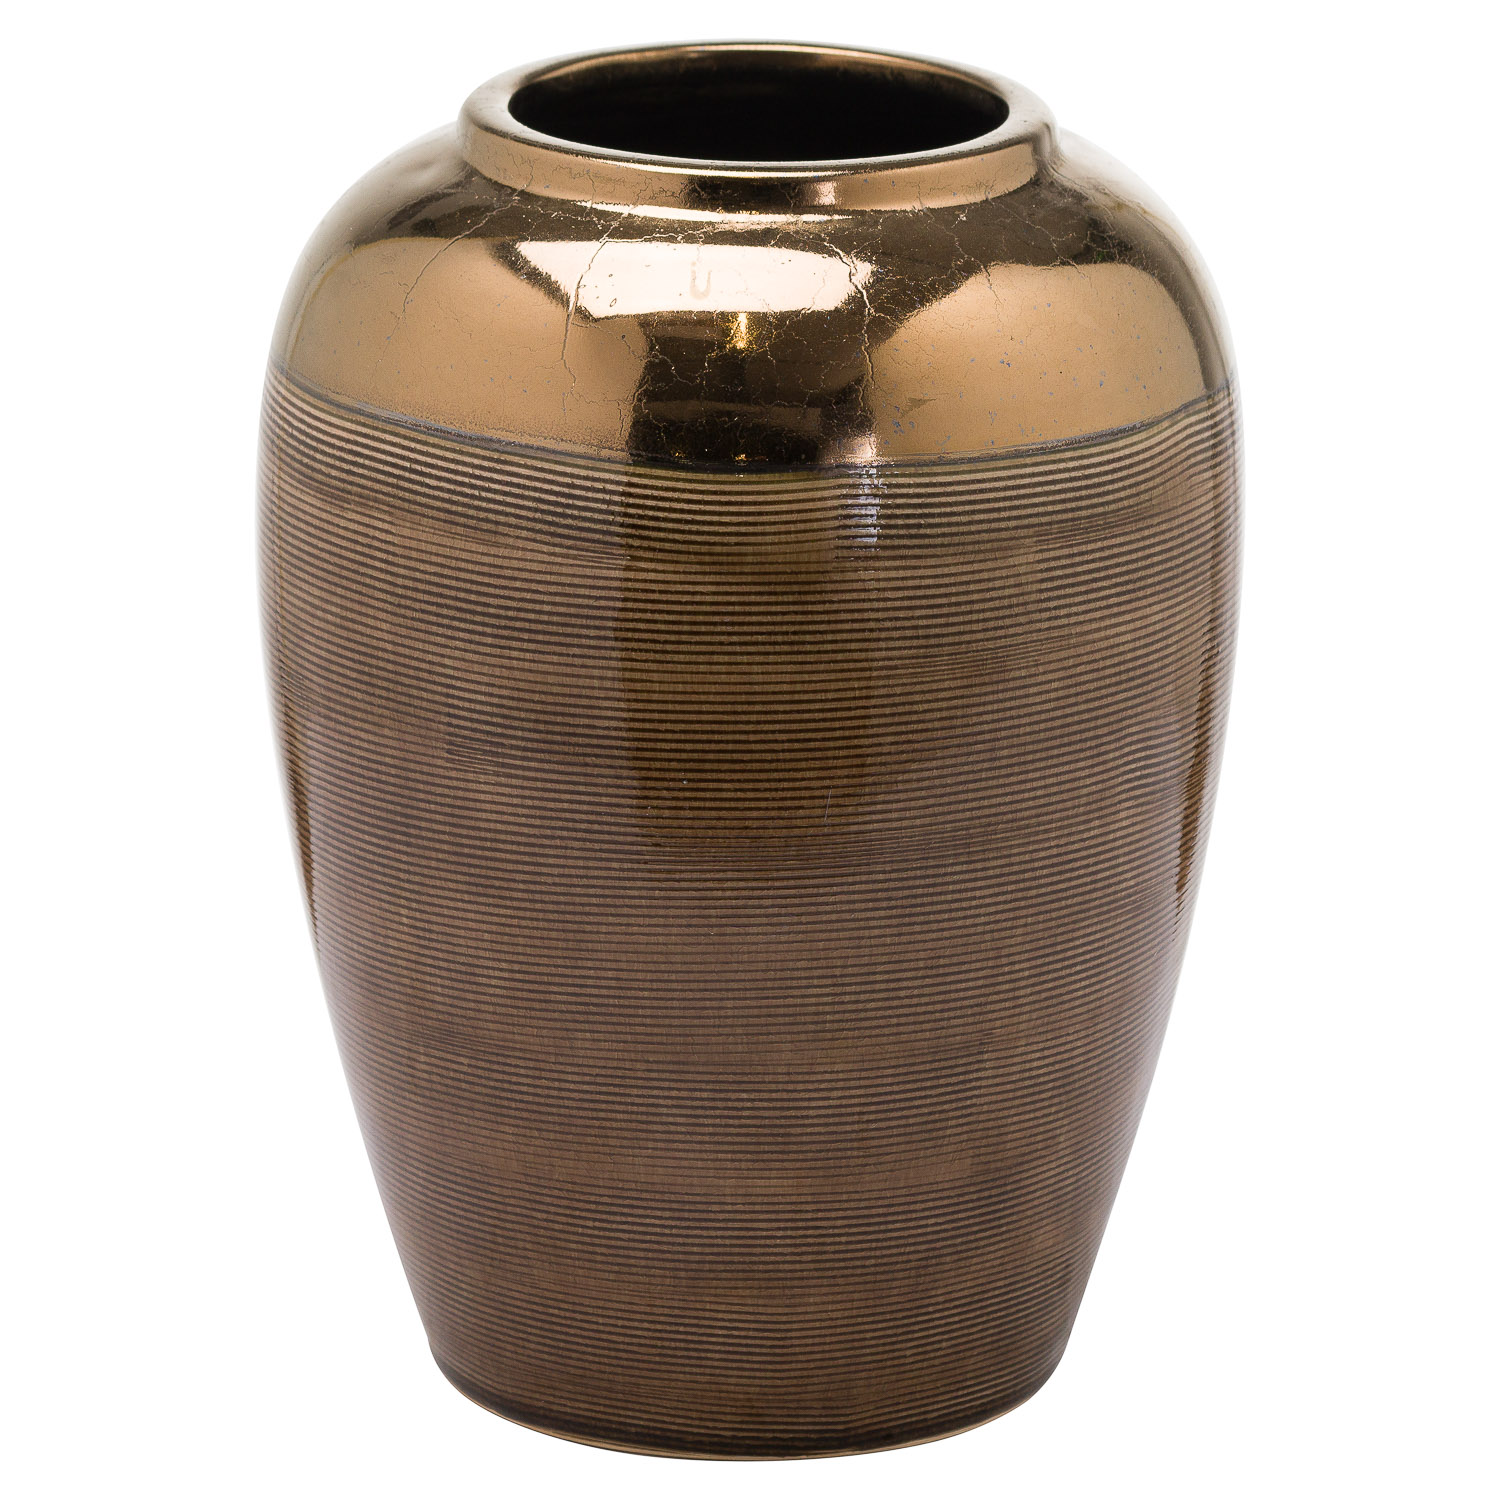 Seville Collection Large Kubru Vase - Image 1